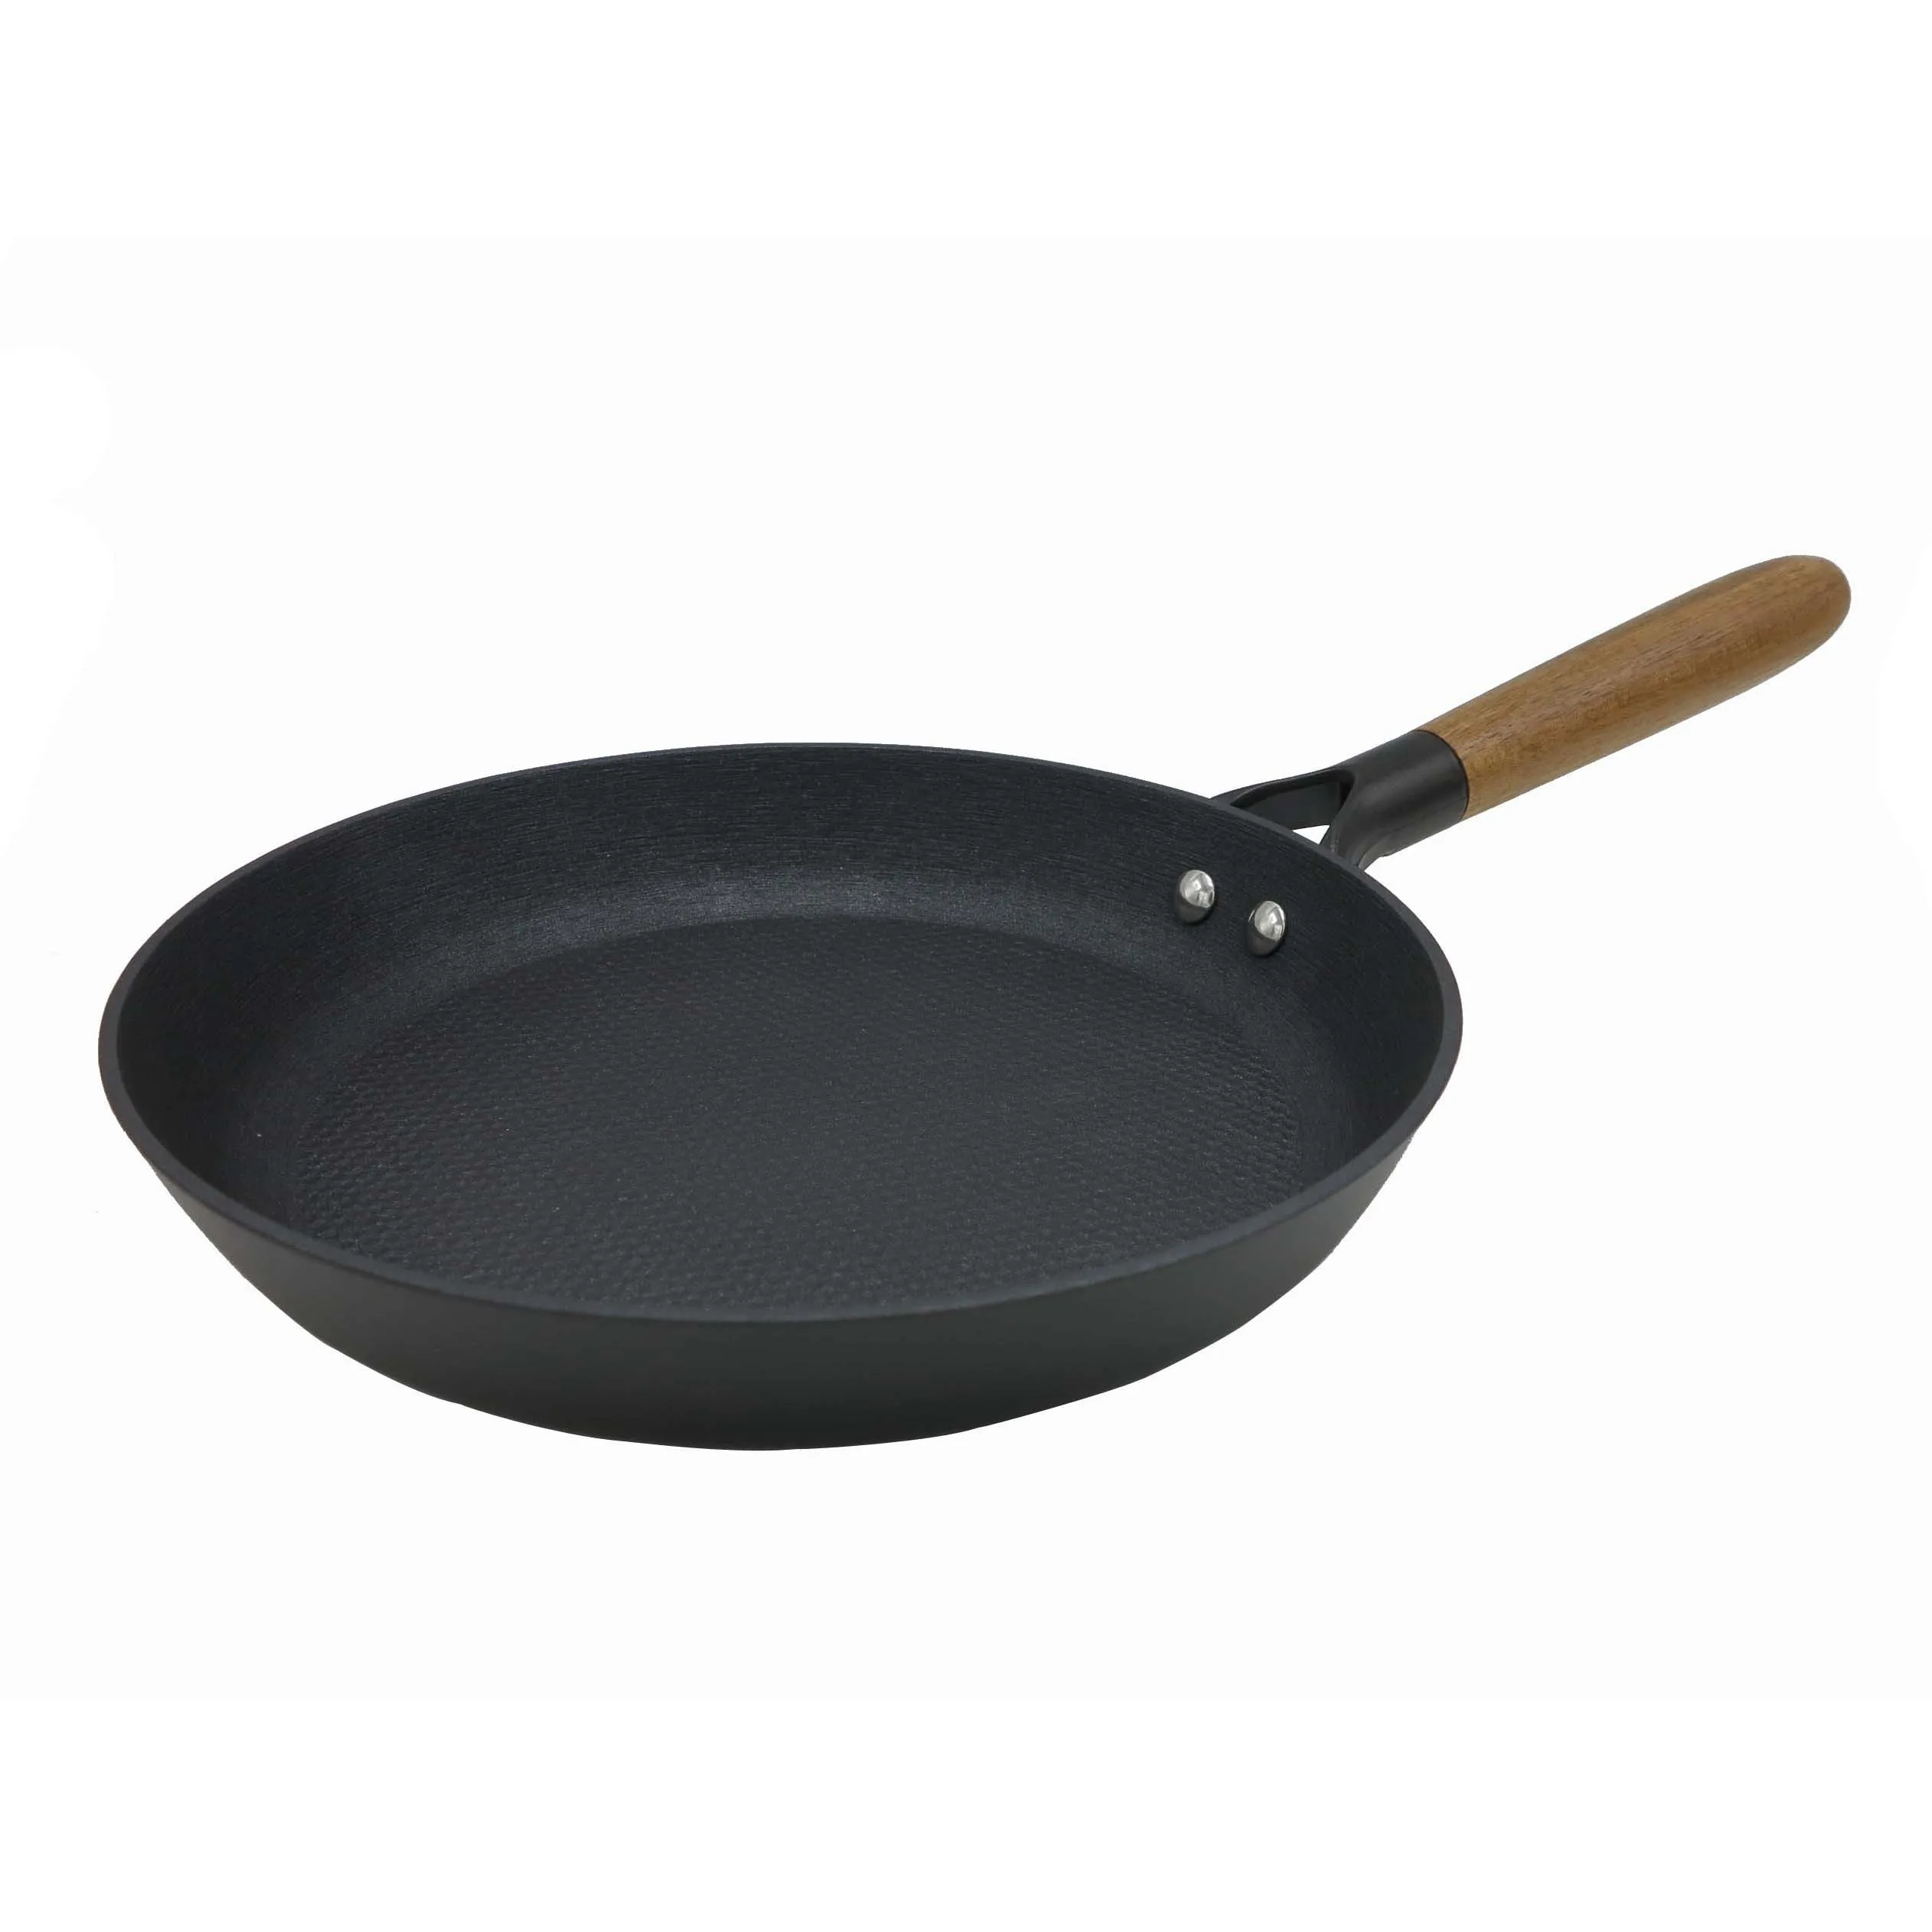 Korean Kitchen Cooking Set Best Cheap Cast Iron Nonstick Cookware Non Stick Deep Egg Frying Pan